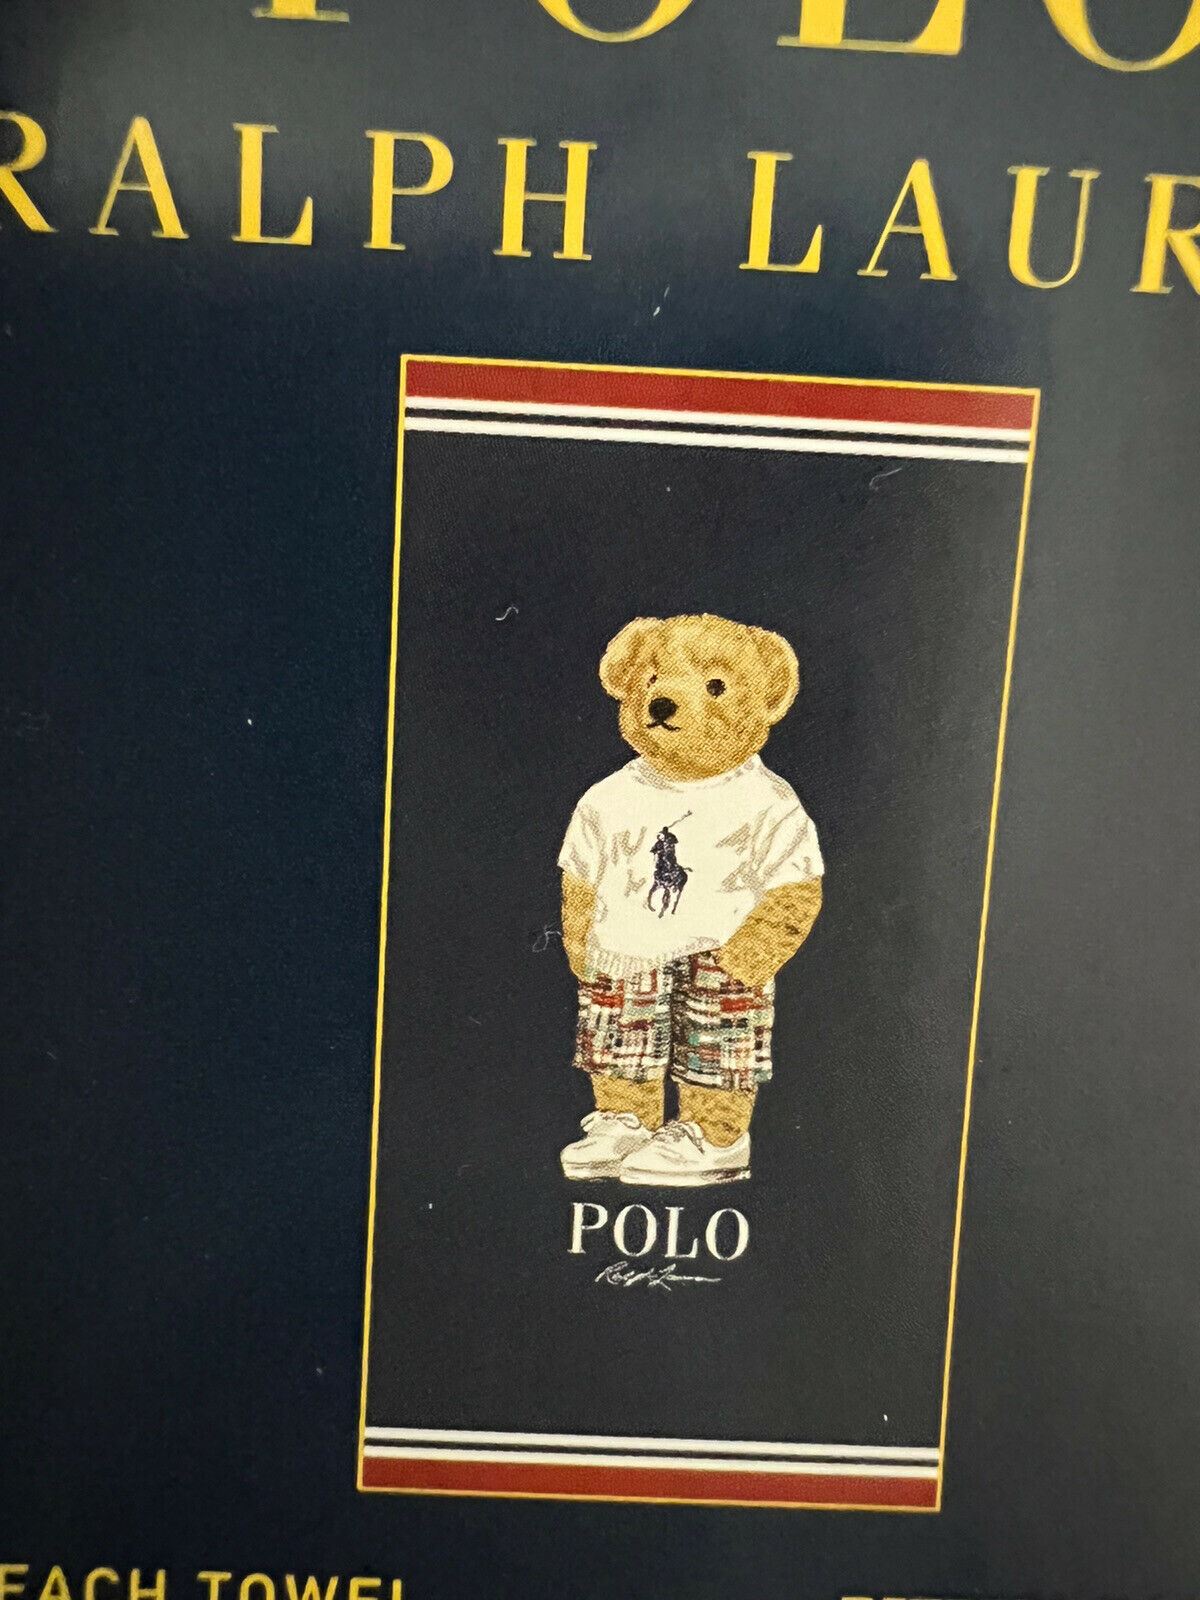 Neu mit Etikett: 70 $ Polo Bear by Ralph Lauren Bären-Strandtuch aus Baumwolle, 35 x 66 cm 